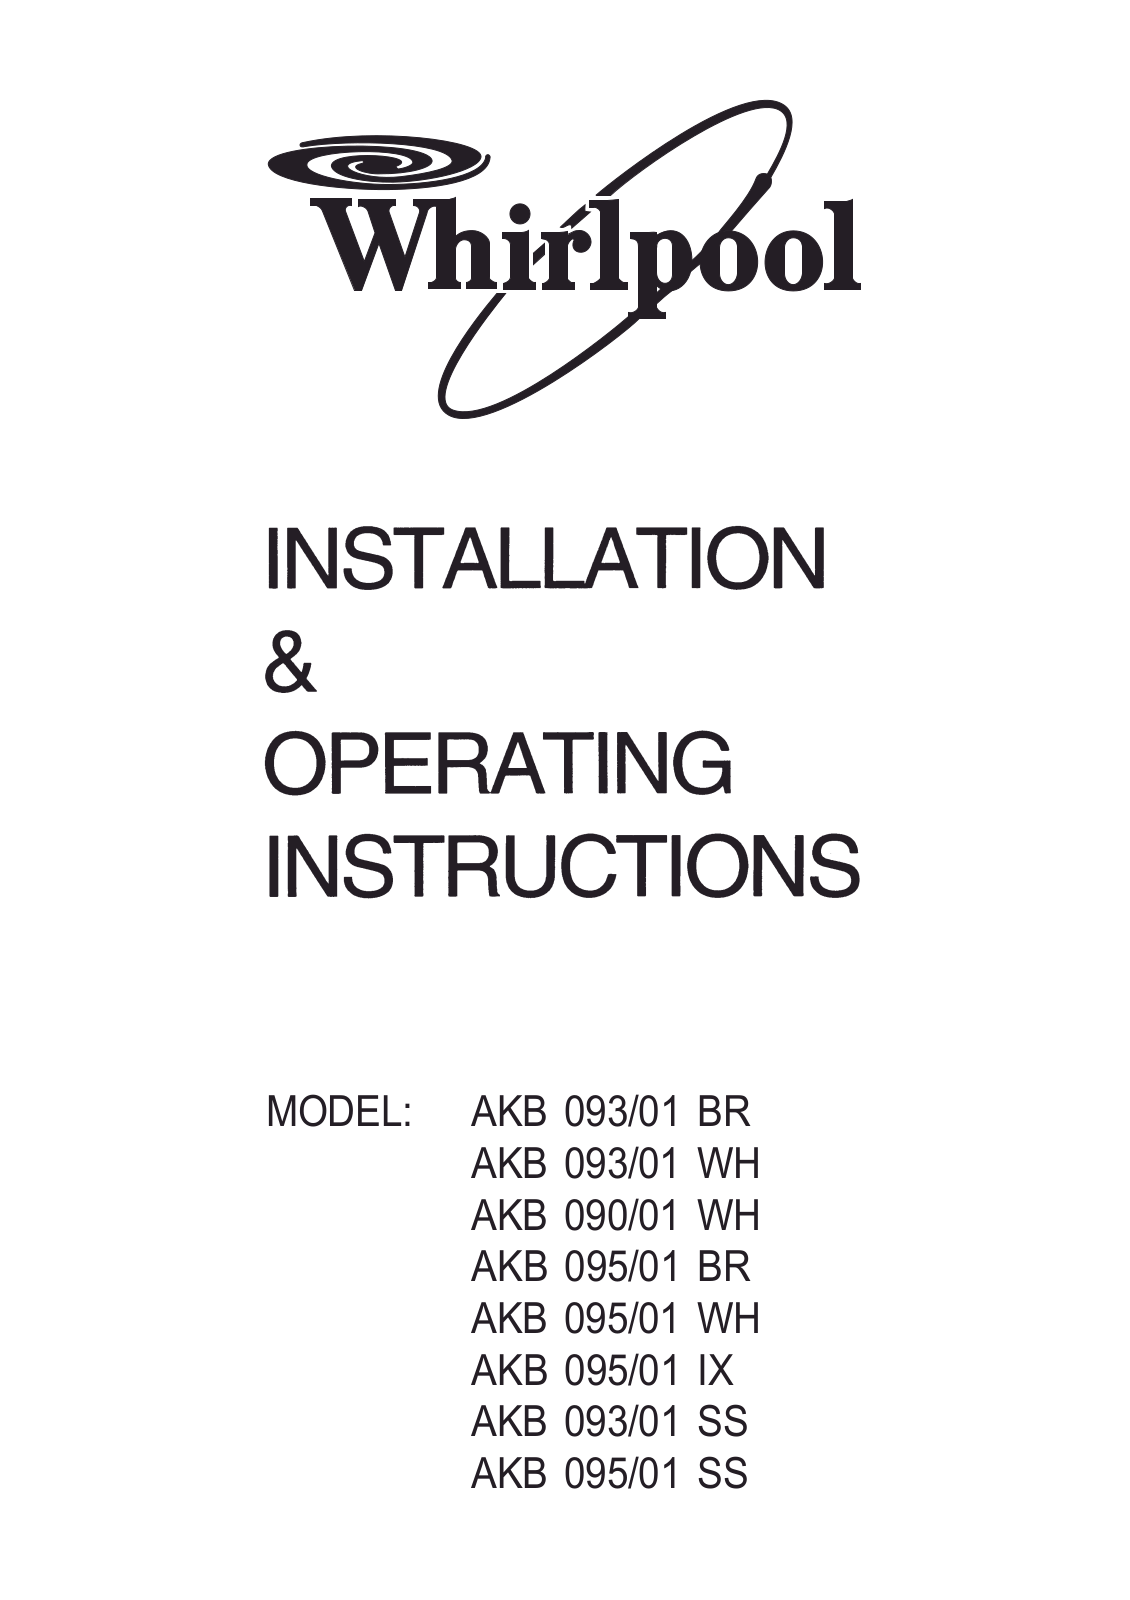 Whirlpool AKB 093-01 BR, AKB 093-01 WH, AKB 090-01 WH, AKB 095-01 BR, AKB 095-01 WH installation Guide